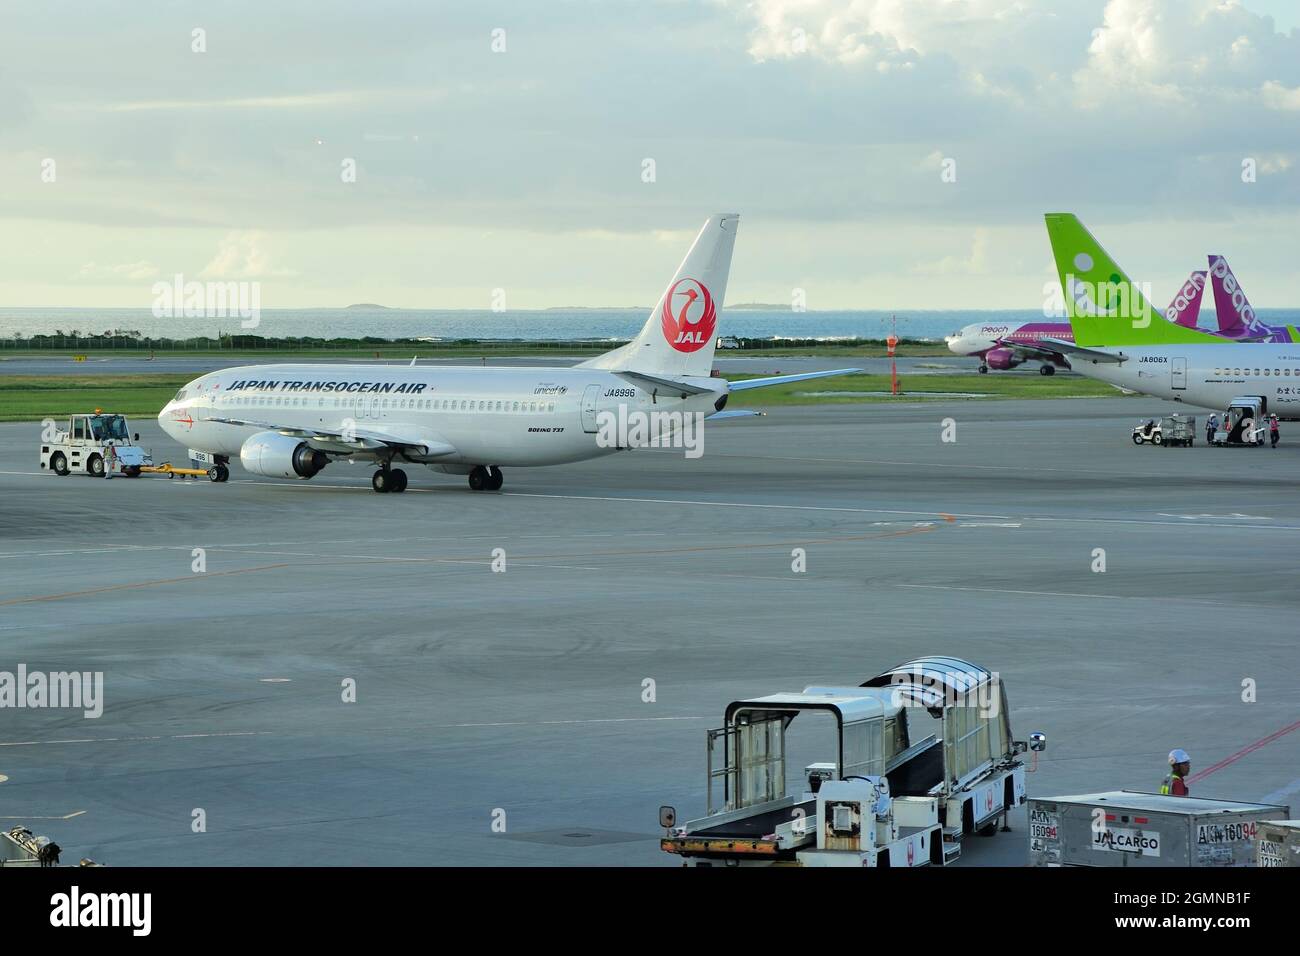 Japan Transocean Air, JTA, Boeing, B-737/400, JA8996, Pushback, Naha Airport, Naha, Okinawa, Ryukyu Islands, Japan Stock Photo